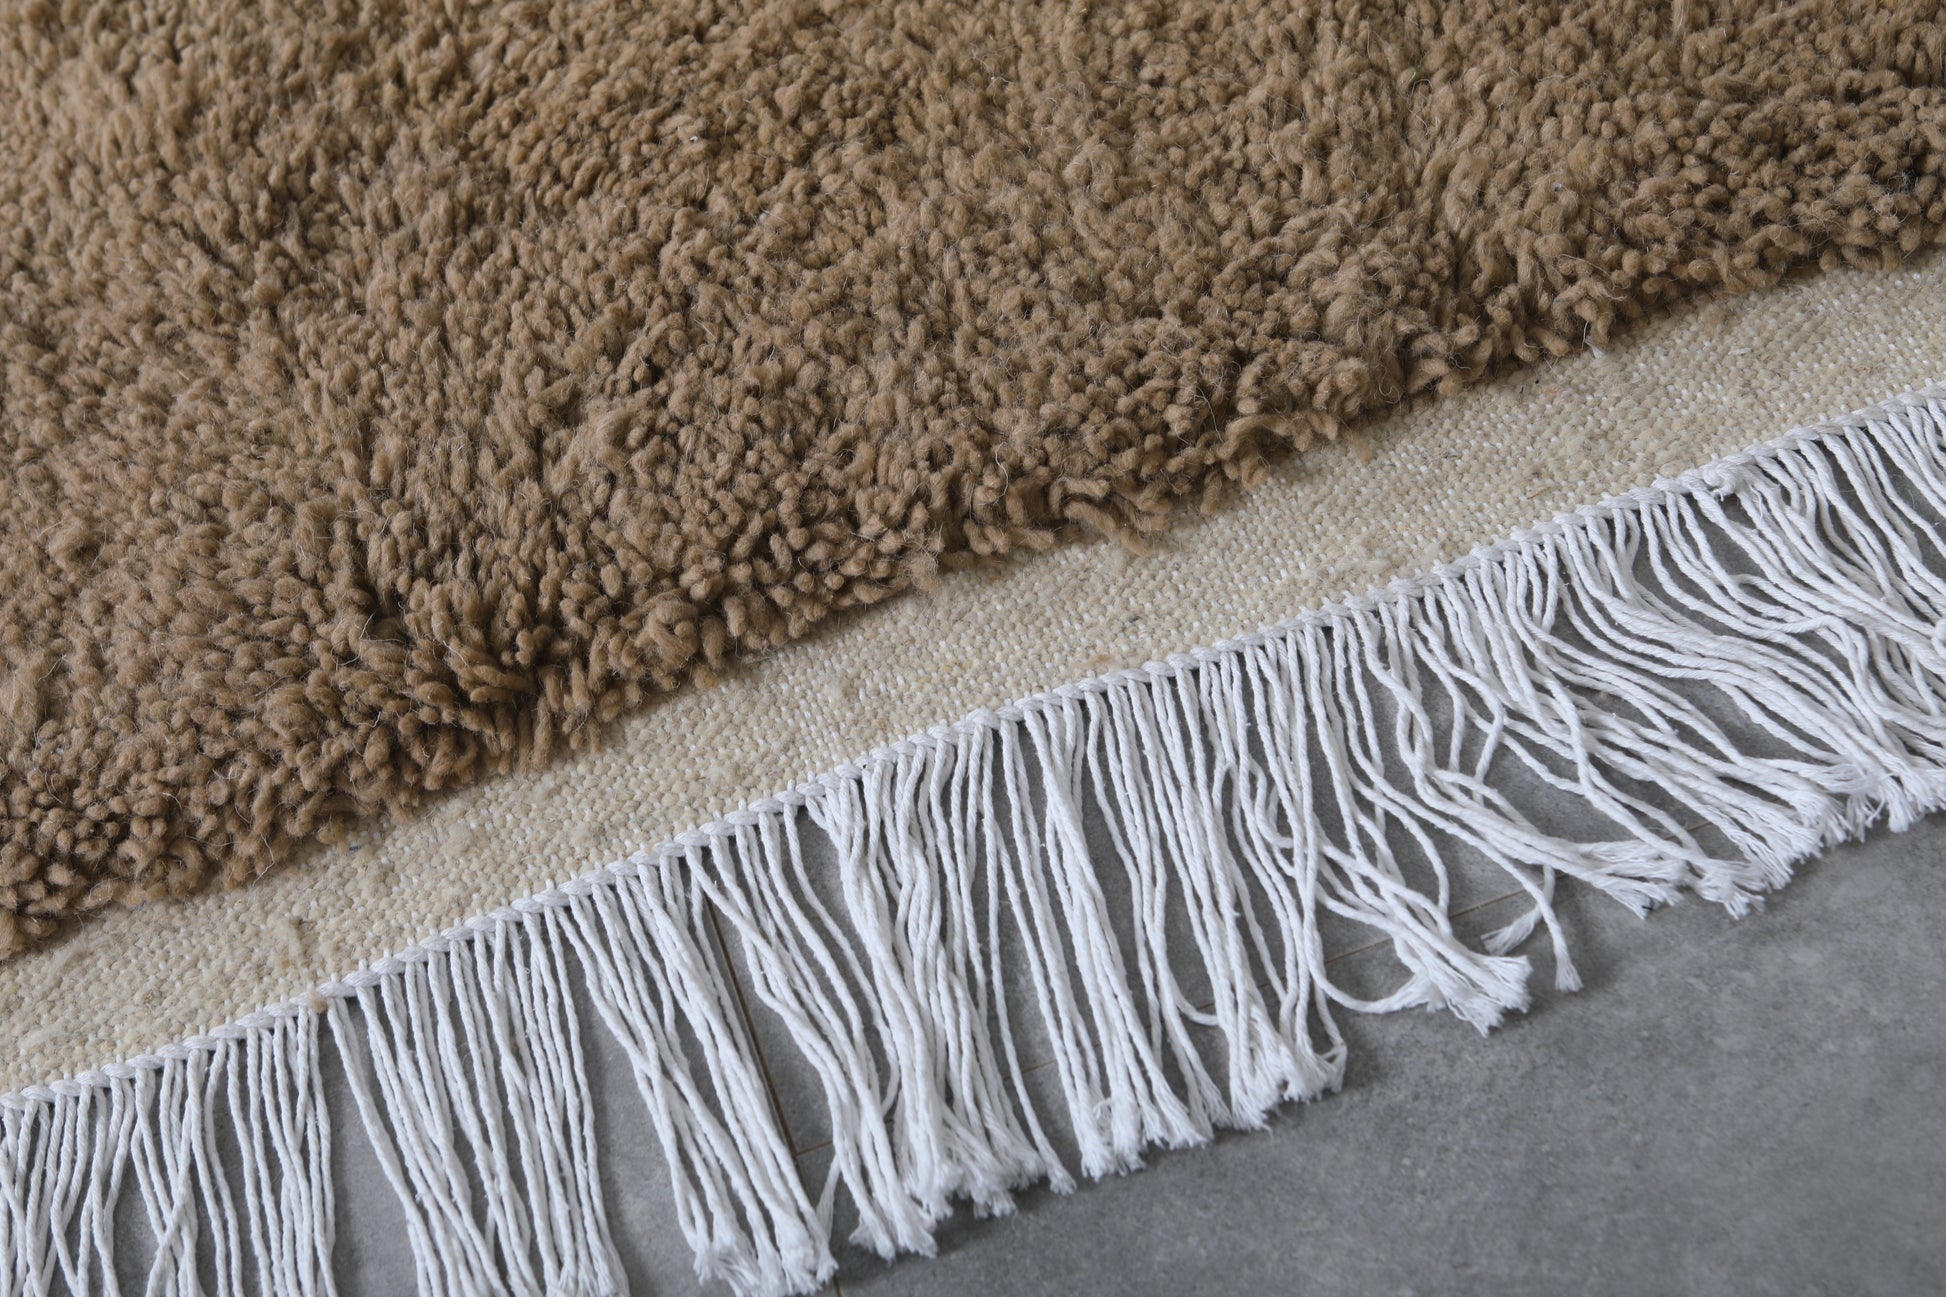 Moroccan rug 7.8 X 10 Feet - Beni ourain rugs